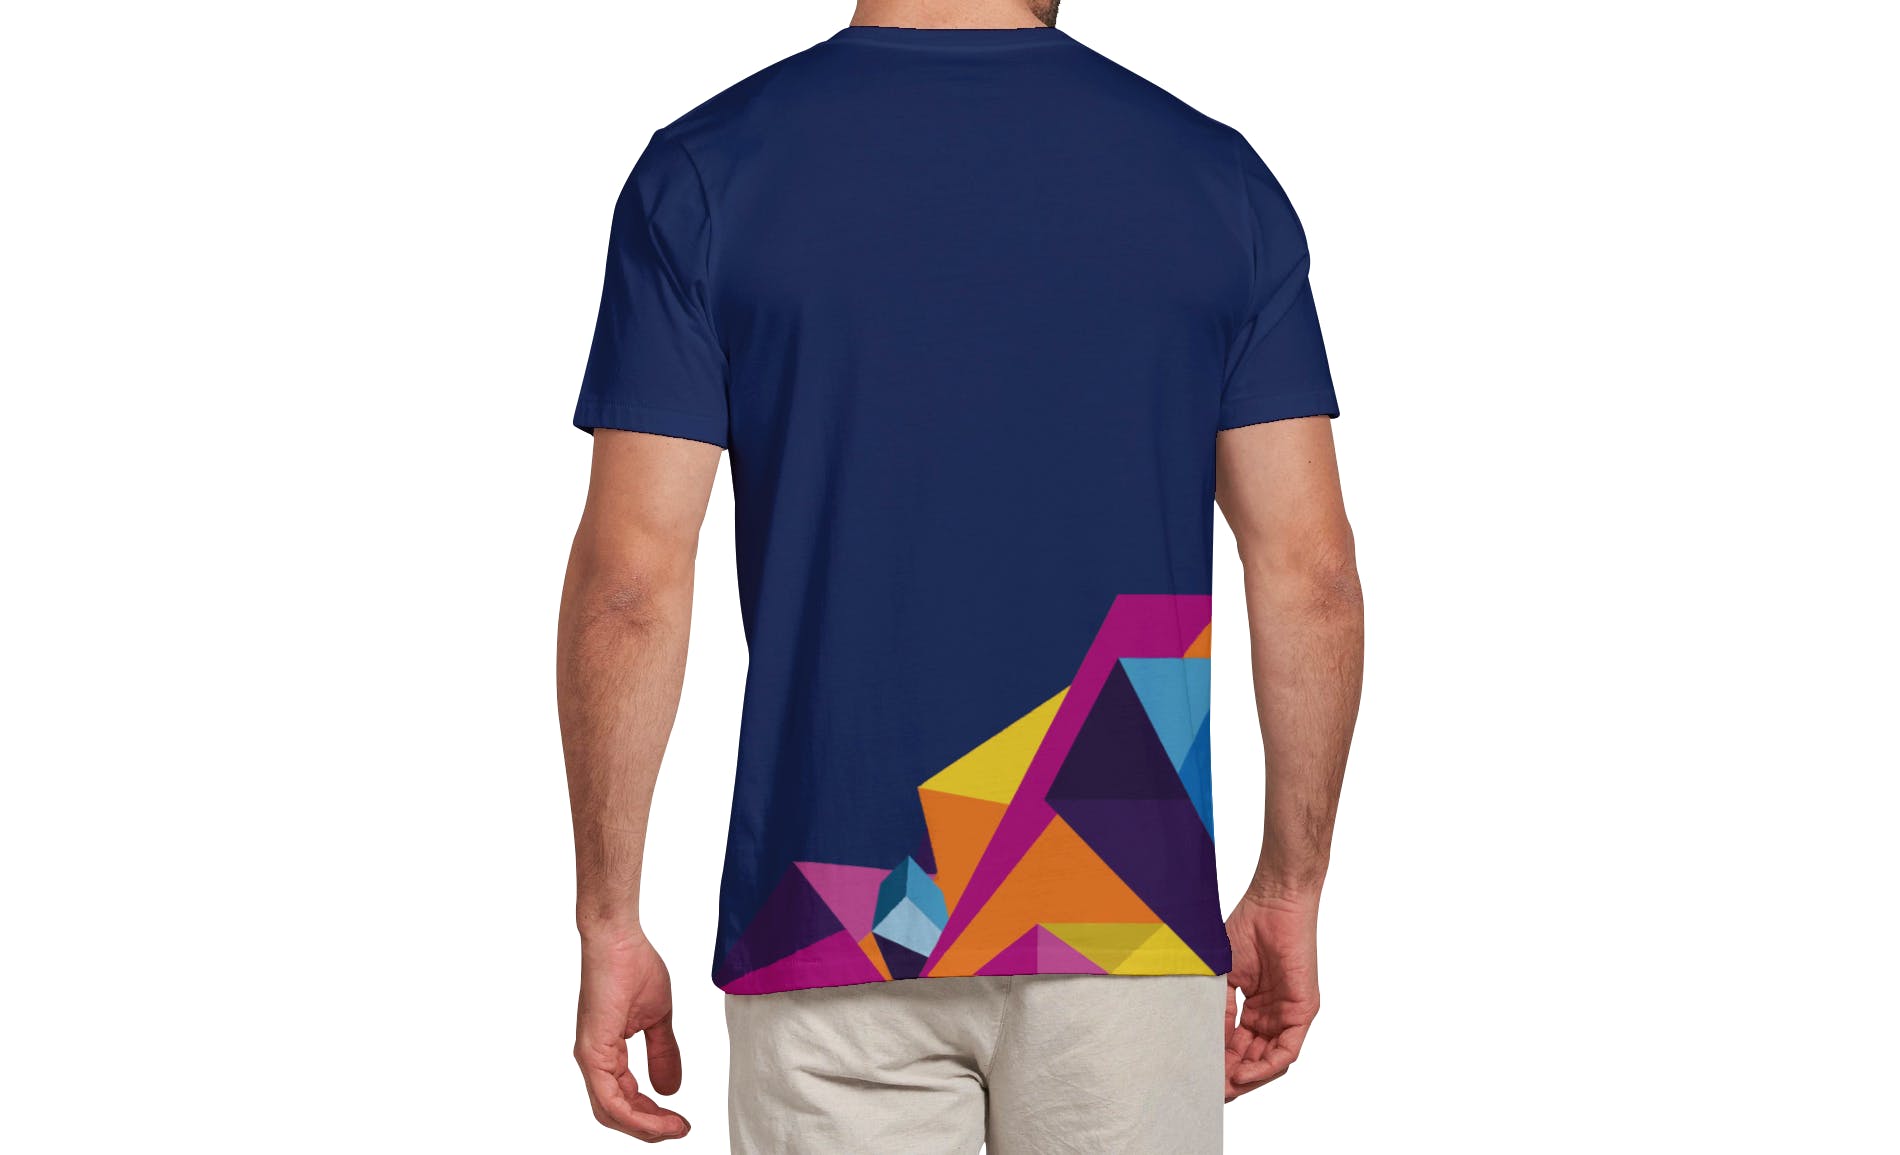 男士T恤印花设计效果图样机16设计网精选v03 T-shirt Mockup Vol 03插图(12)